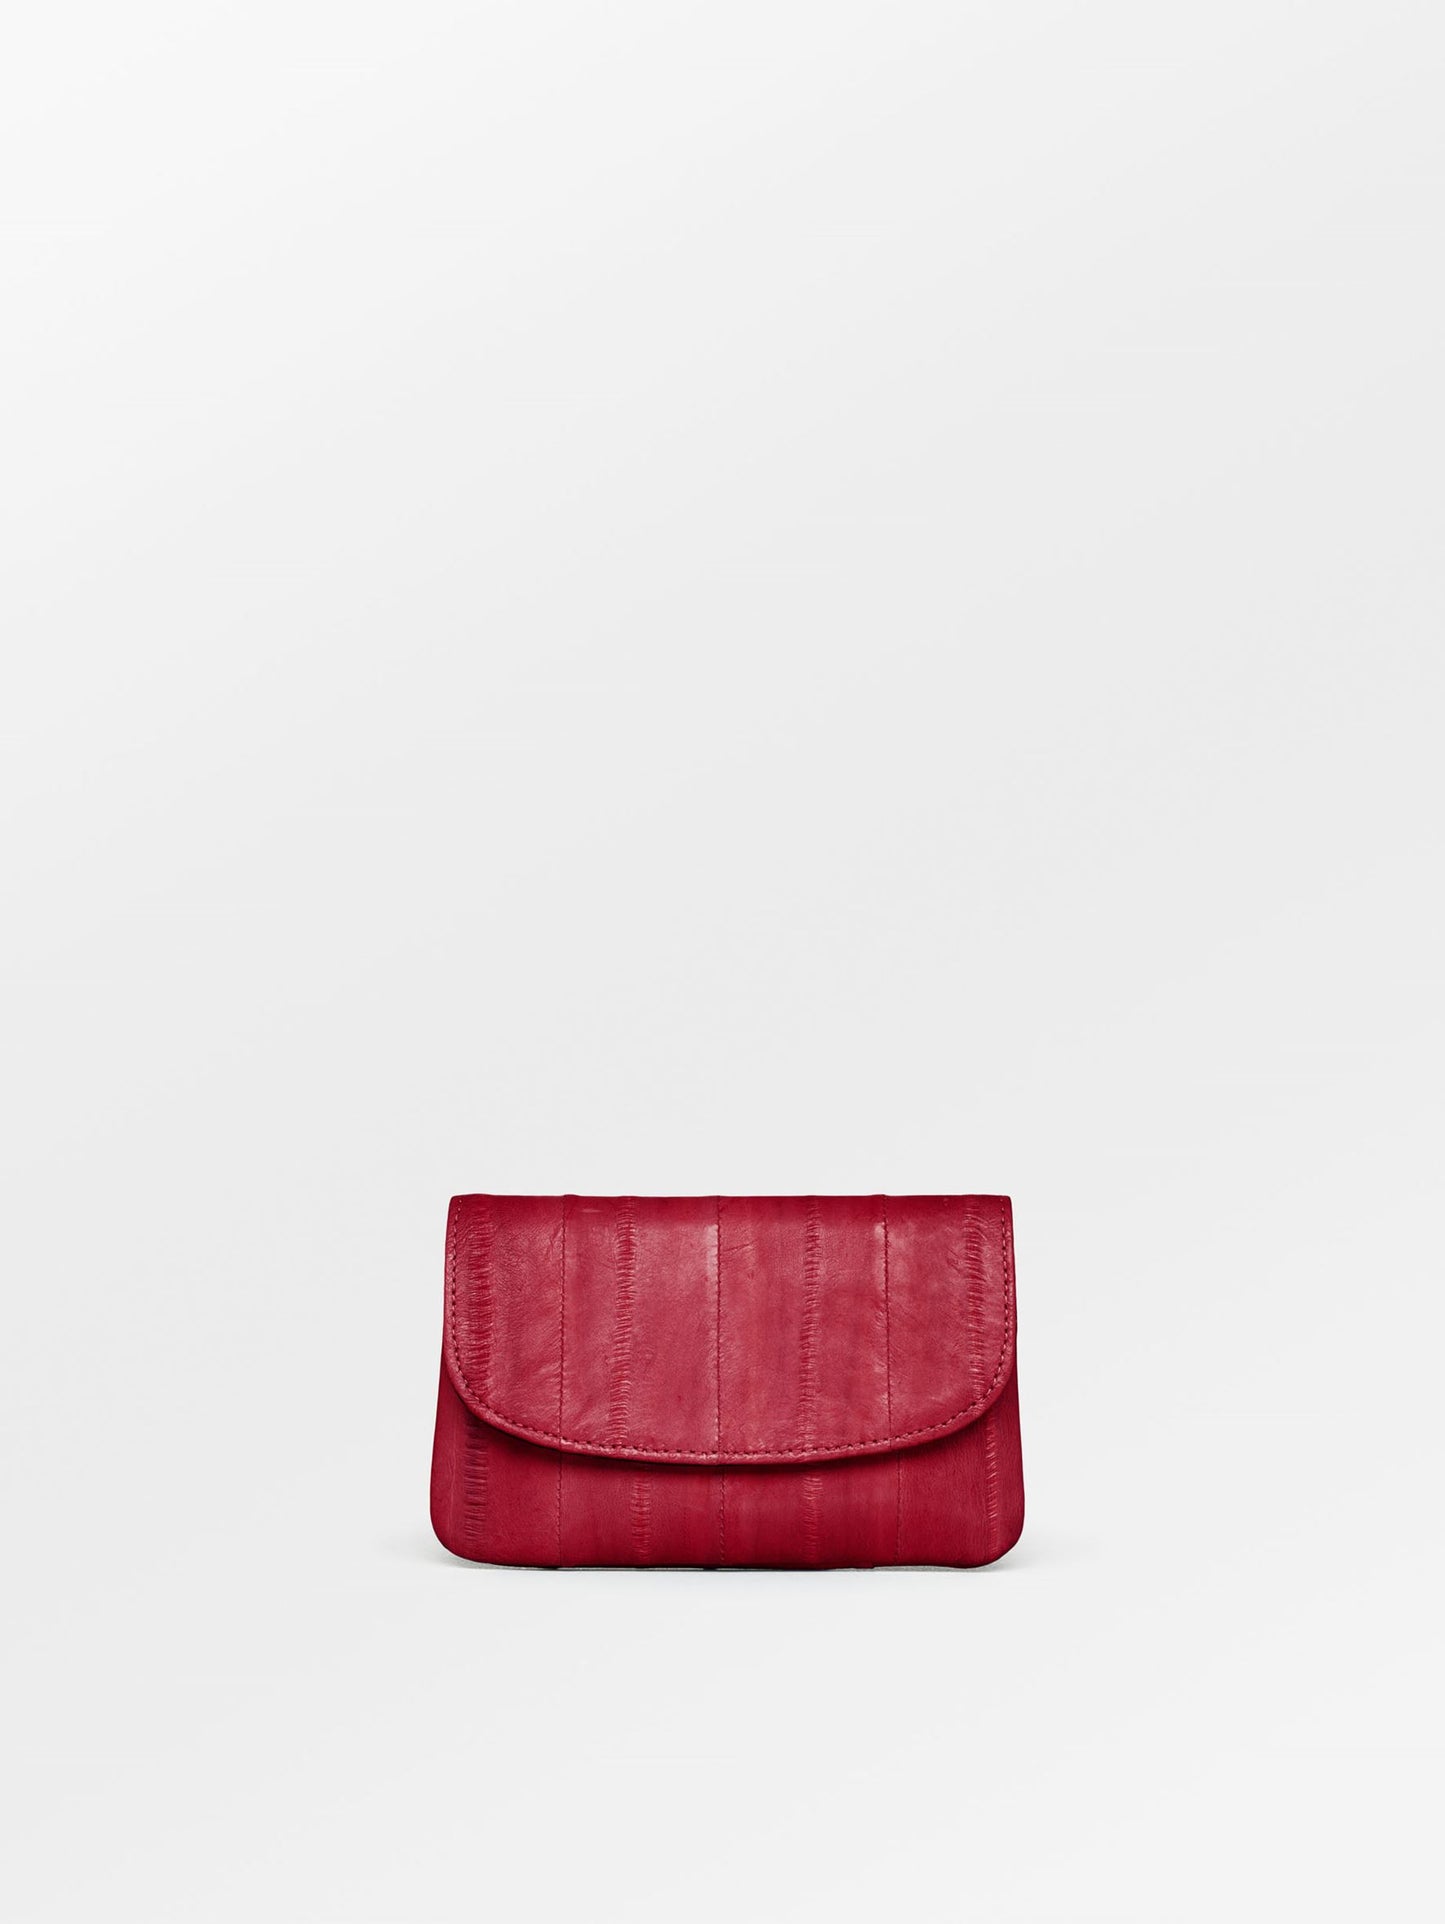 Becksöndergaard, Handy Purse - Red, accessories